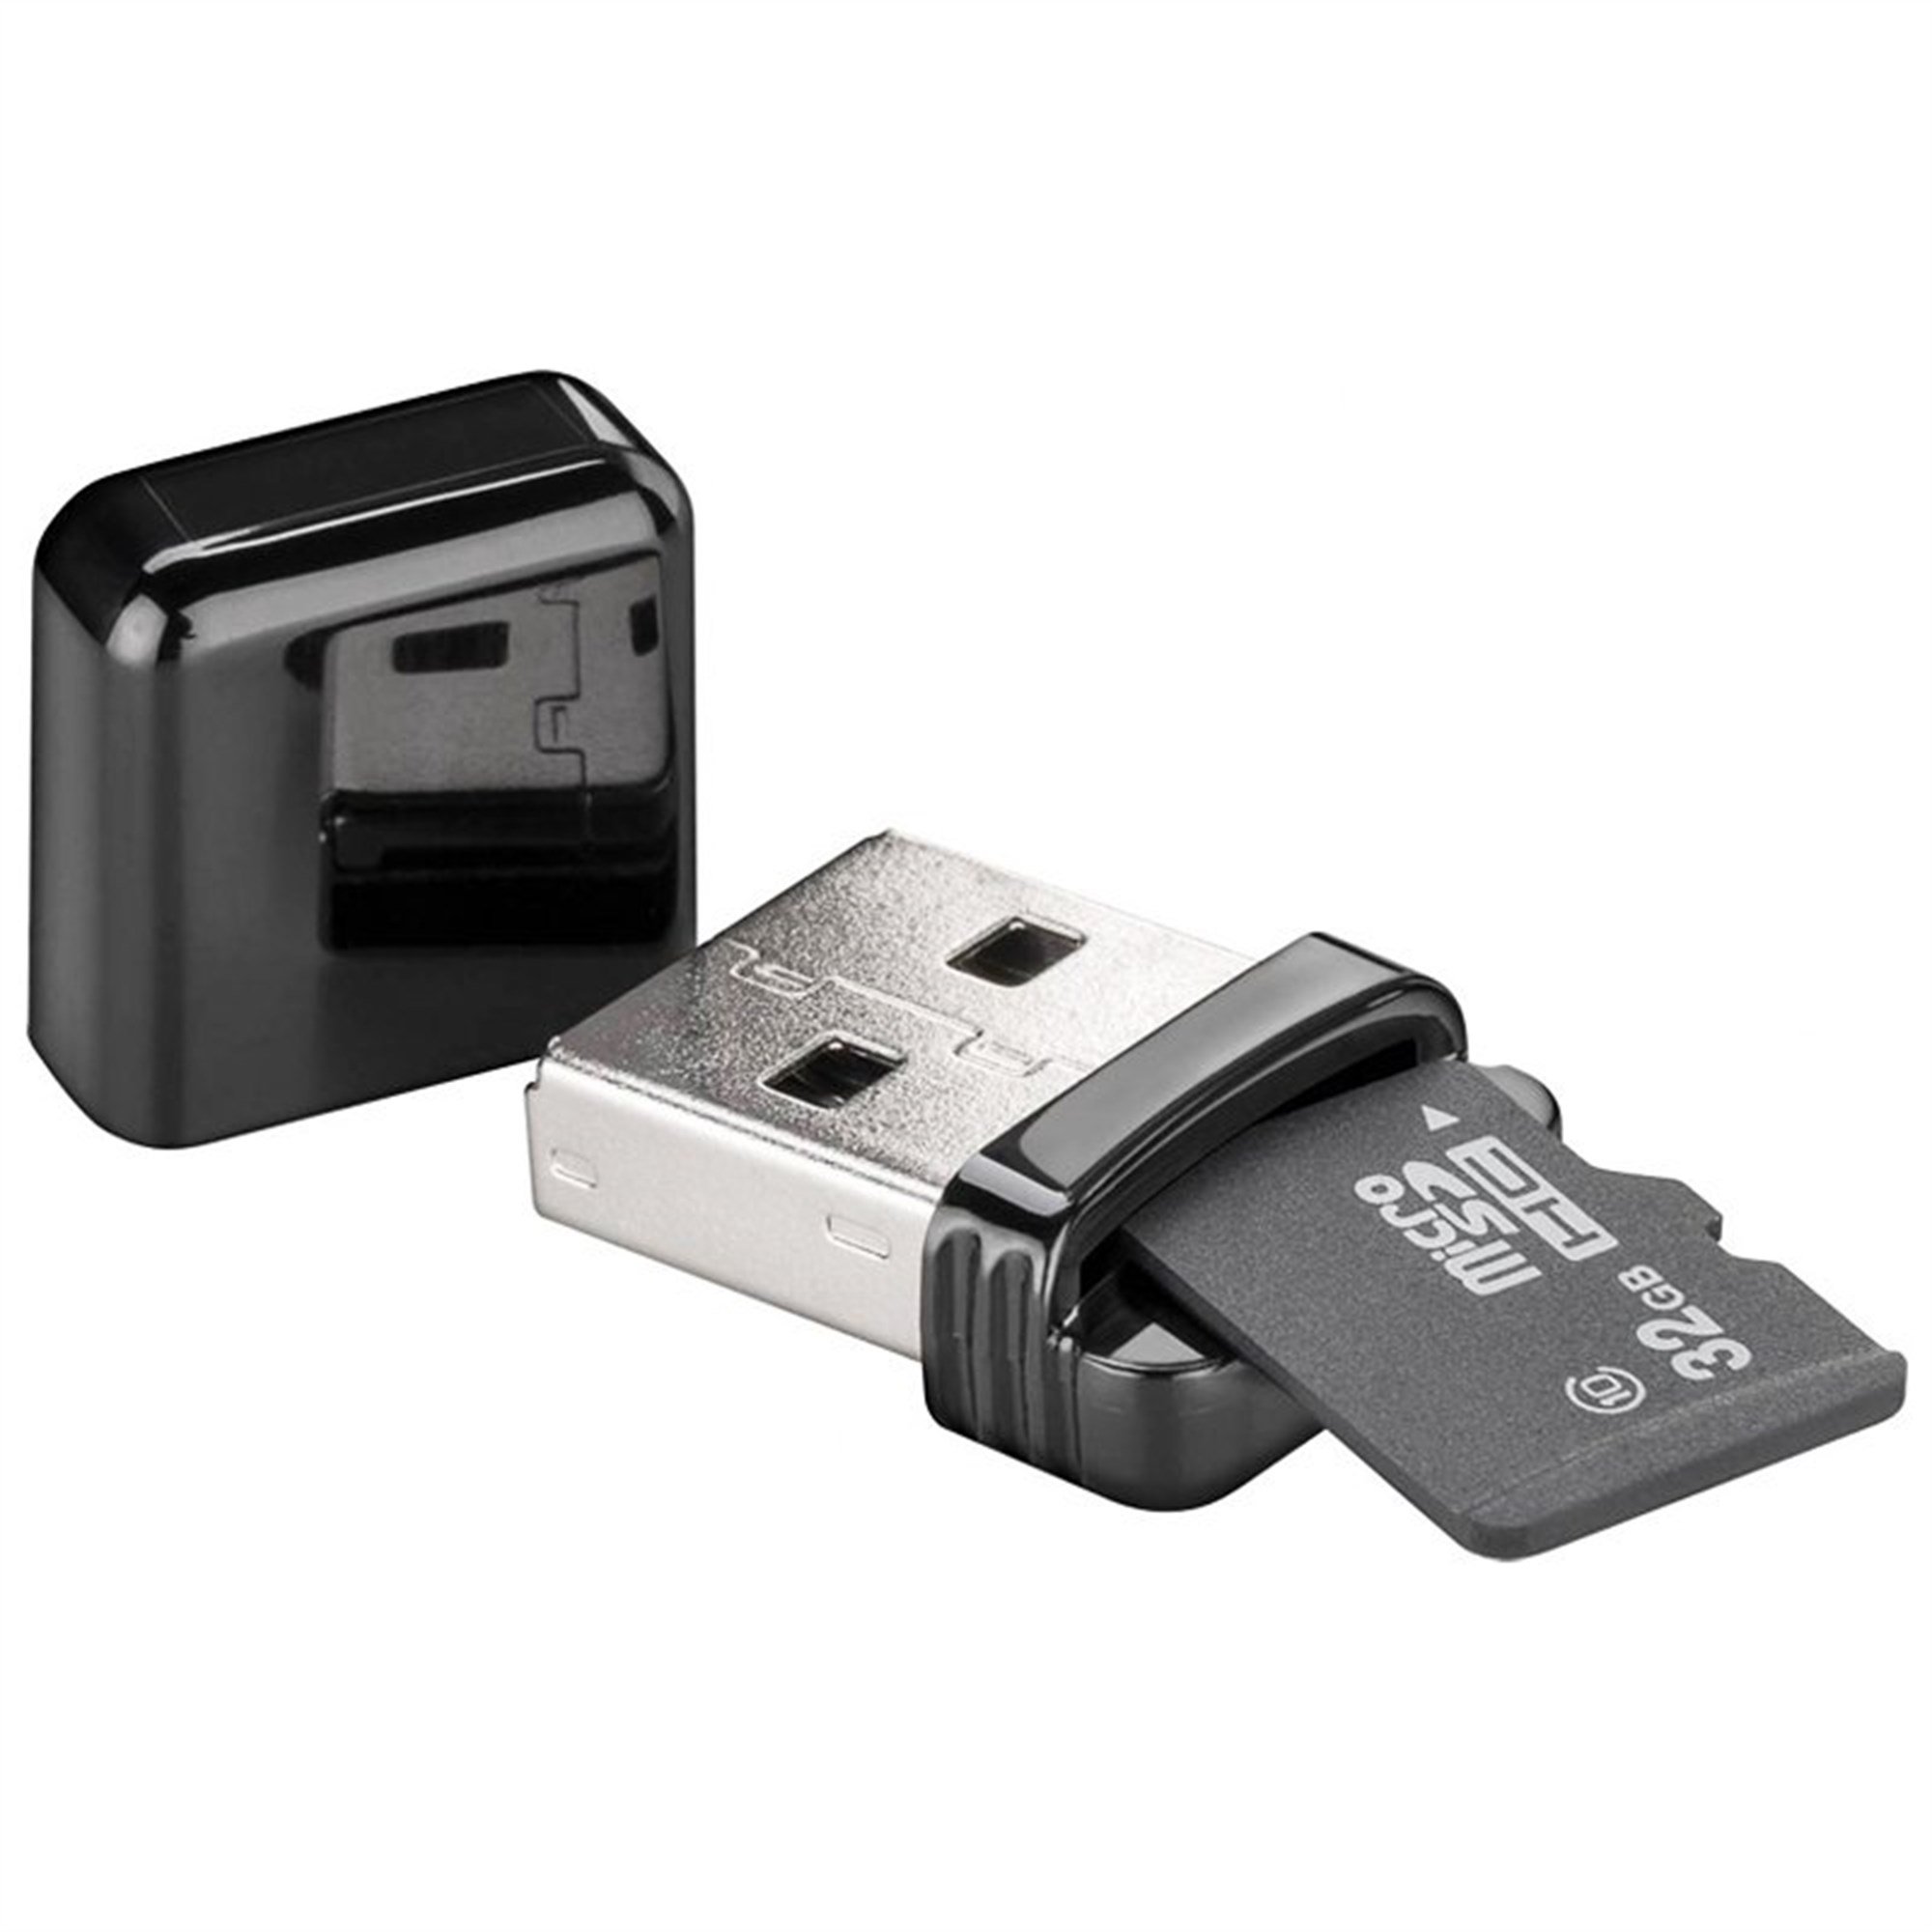 Micro SD ve SD bellek kartı formatlarını okumak için kart okuyucu USB 2.0,  Micro SD, SDHC,